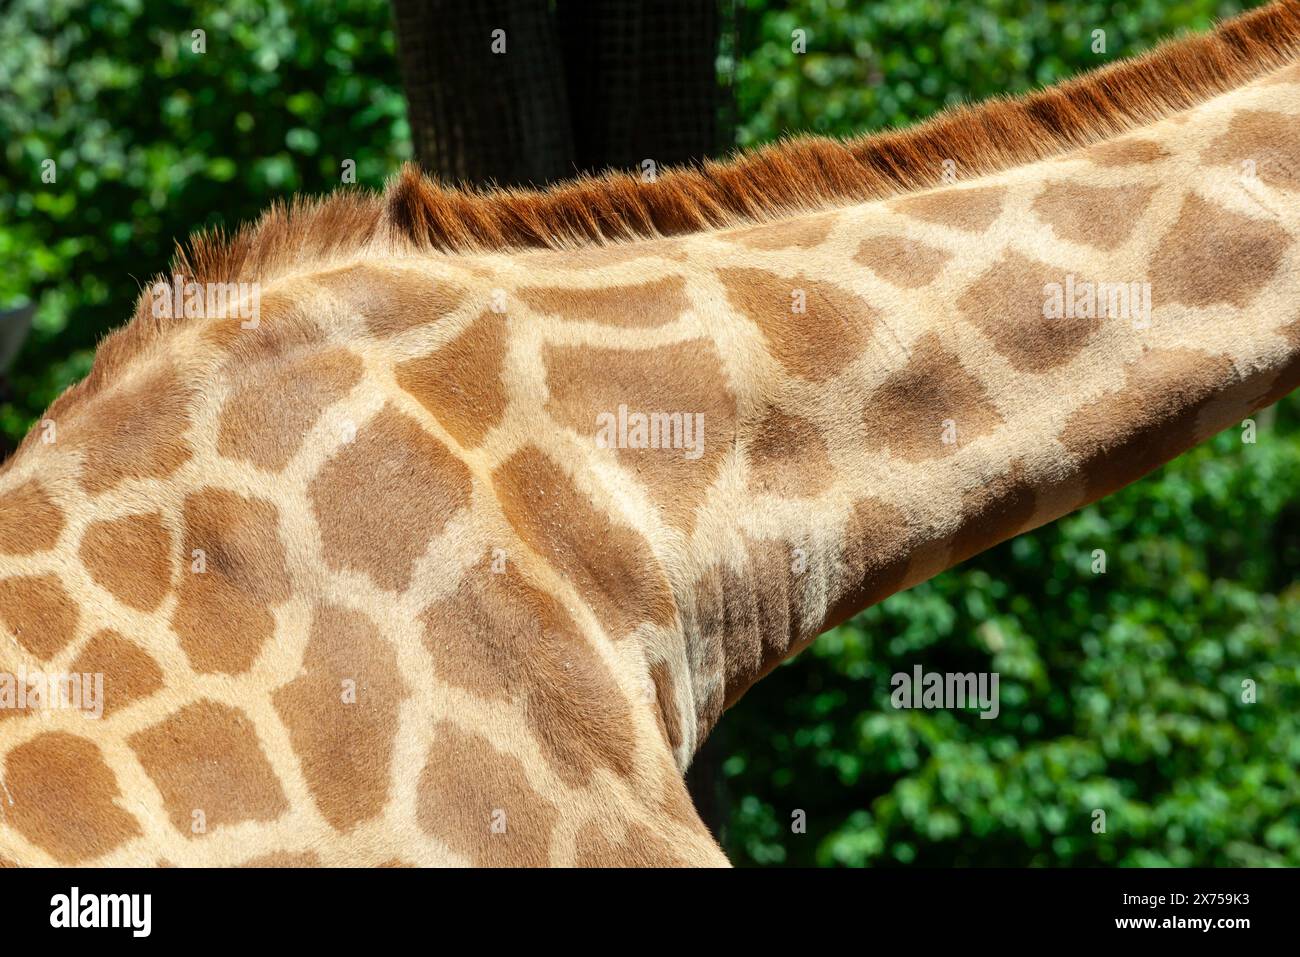 Foto dettagliata che mostra il motivo unico sul collo e sulla pelle di una giraffa, mettendo in risalto gli intricati disegni della natura sotto la luce del sole Foto Stock